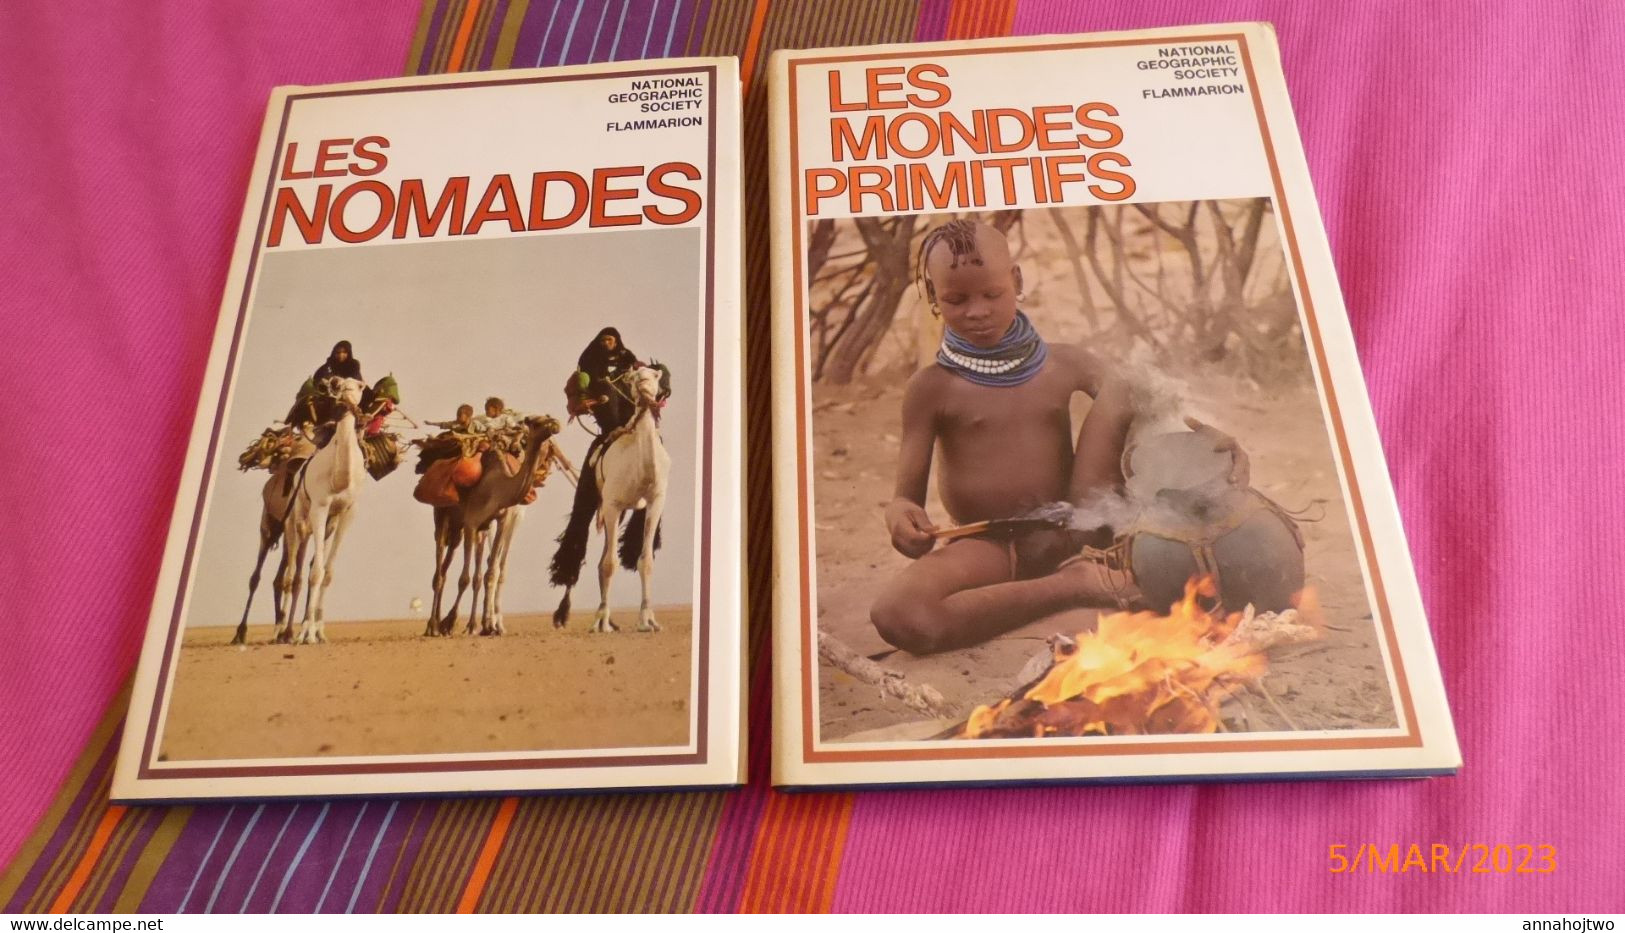 2 Volumes :  LES NOMADES & LES MONDES PRIMITIFS   / National Geographic Society -1978. - Lots De Plusieurs Livres